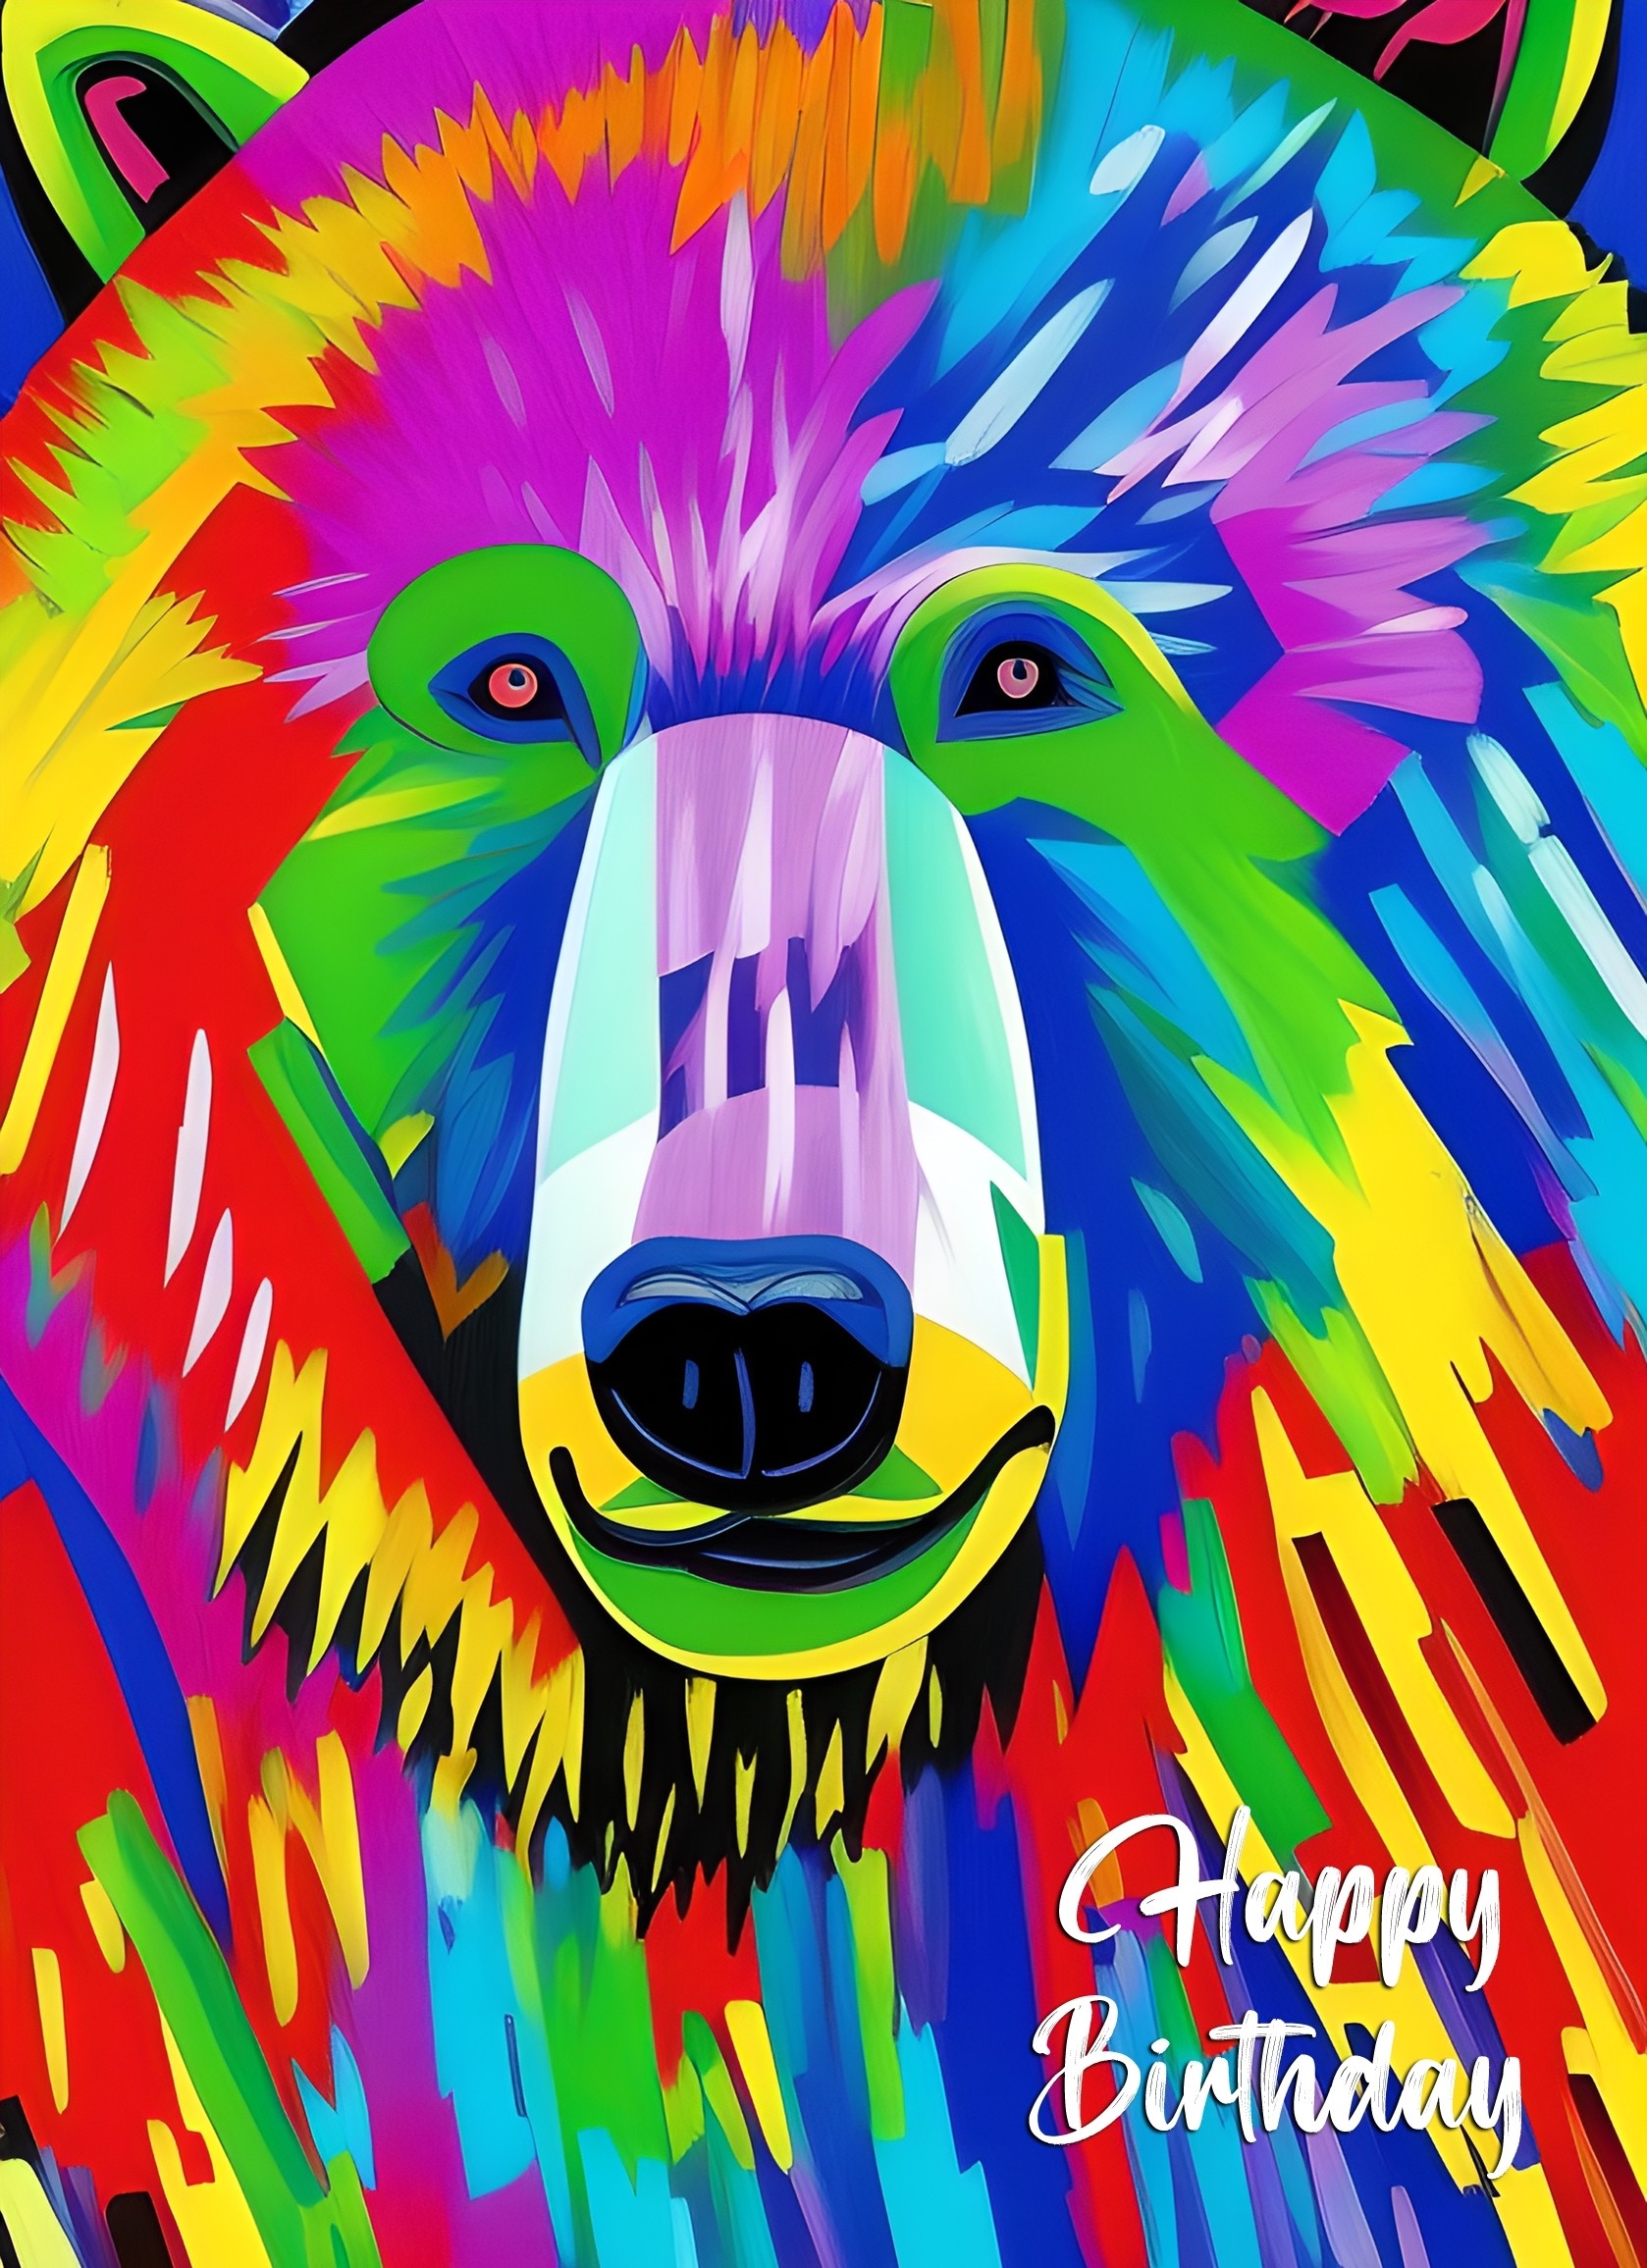 Bear Animal Colourful Abstract Art Birthday Card